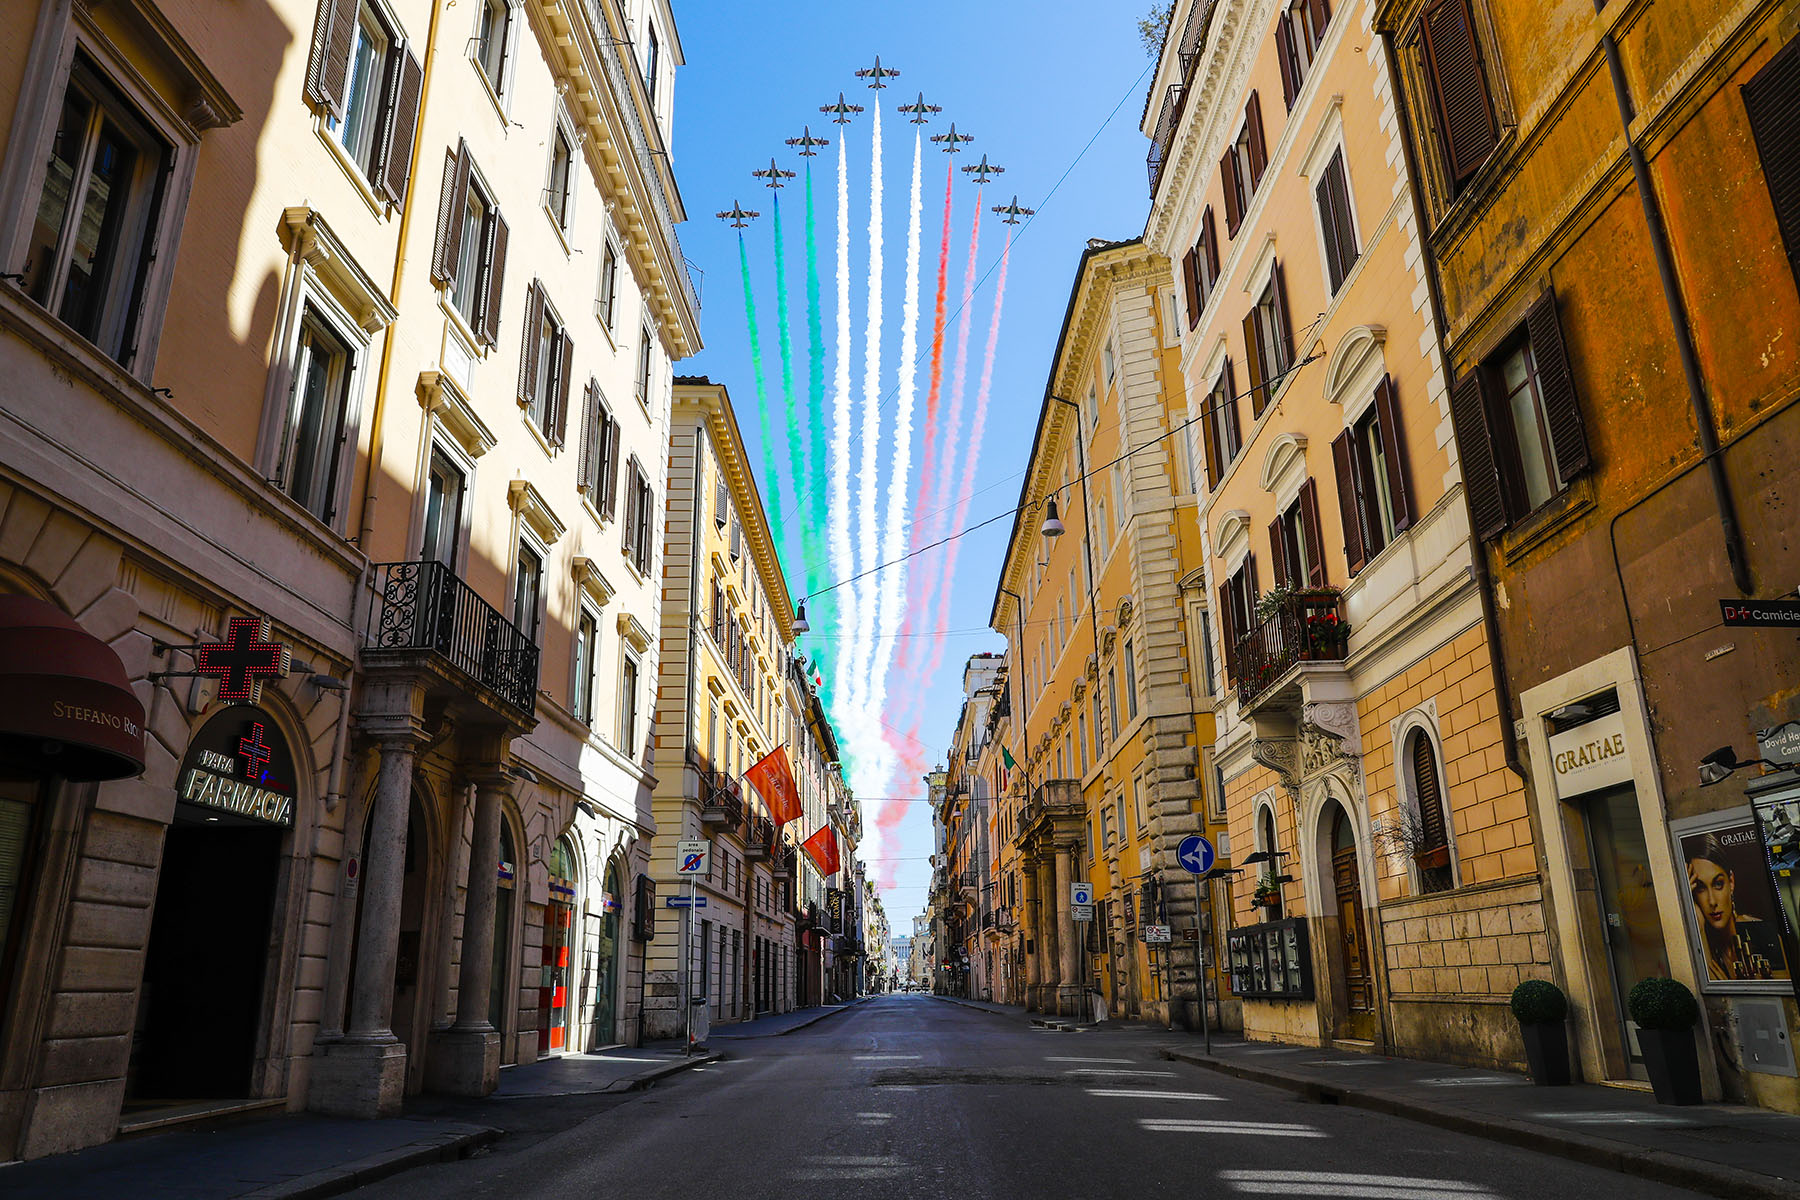 Le frecce tricolori sorvolano Via del Corso deserta a causa del Coronavirus (Covid-19) in occasione della festa della Liberazione. Roma 25 aprile 2020